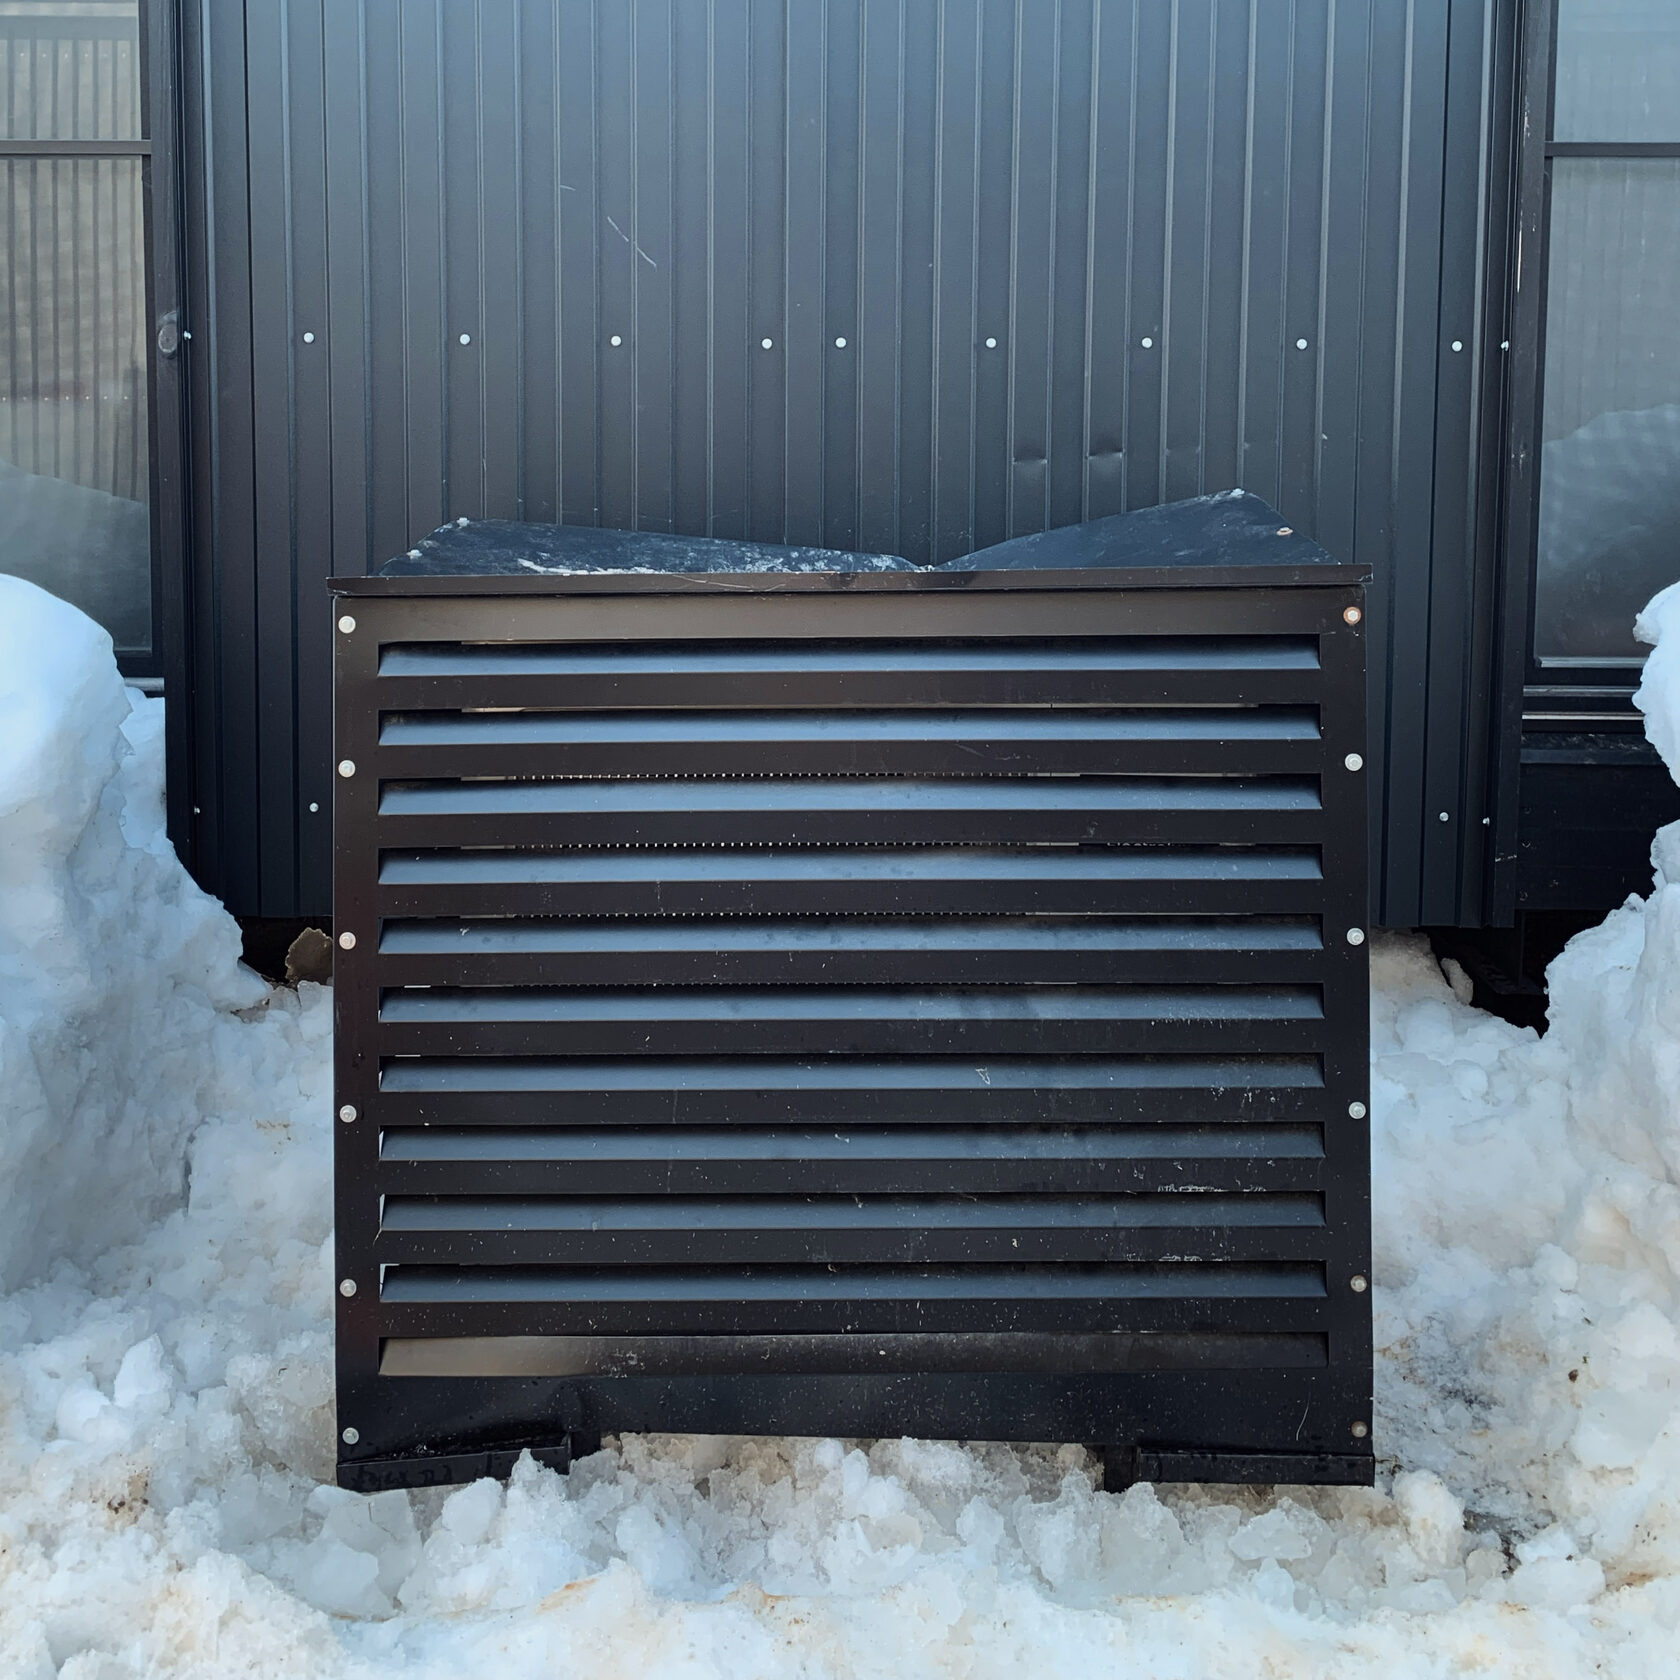 Как защитить тепловой насос от падения льда и снега с крыши